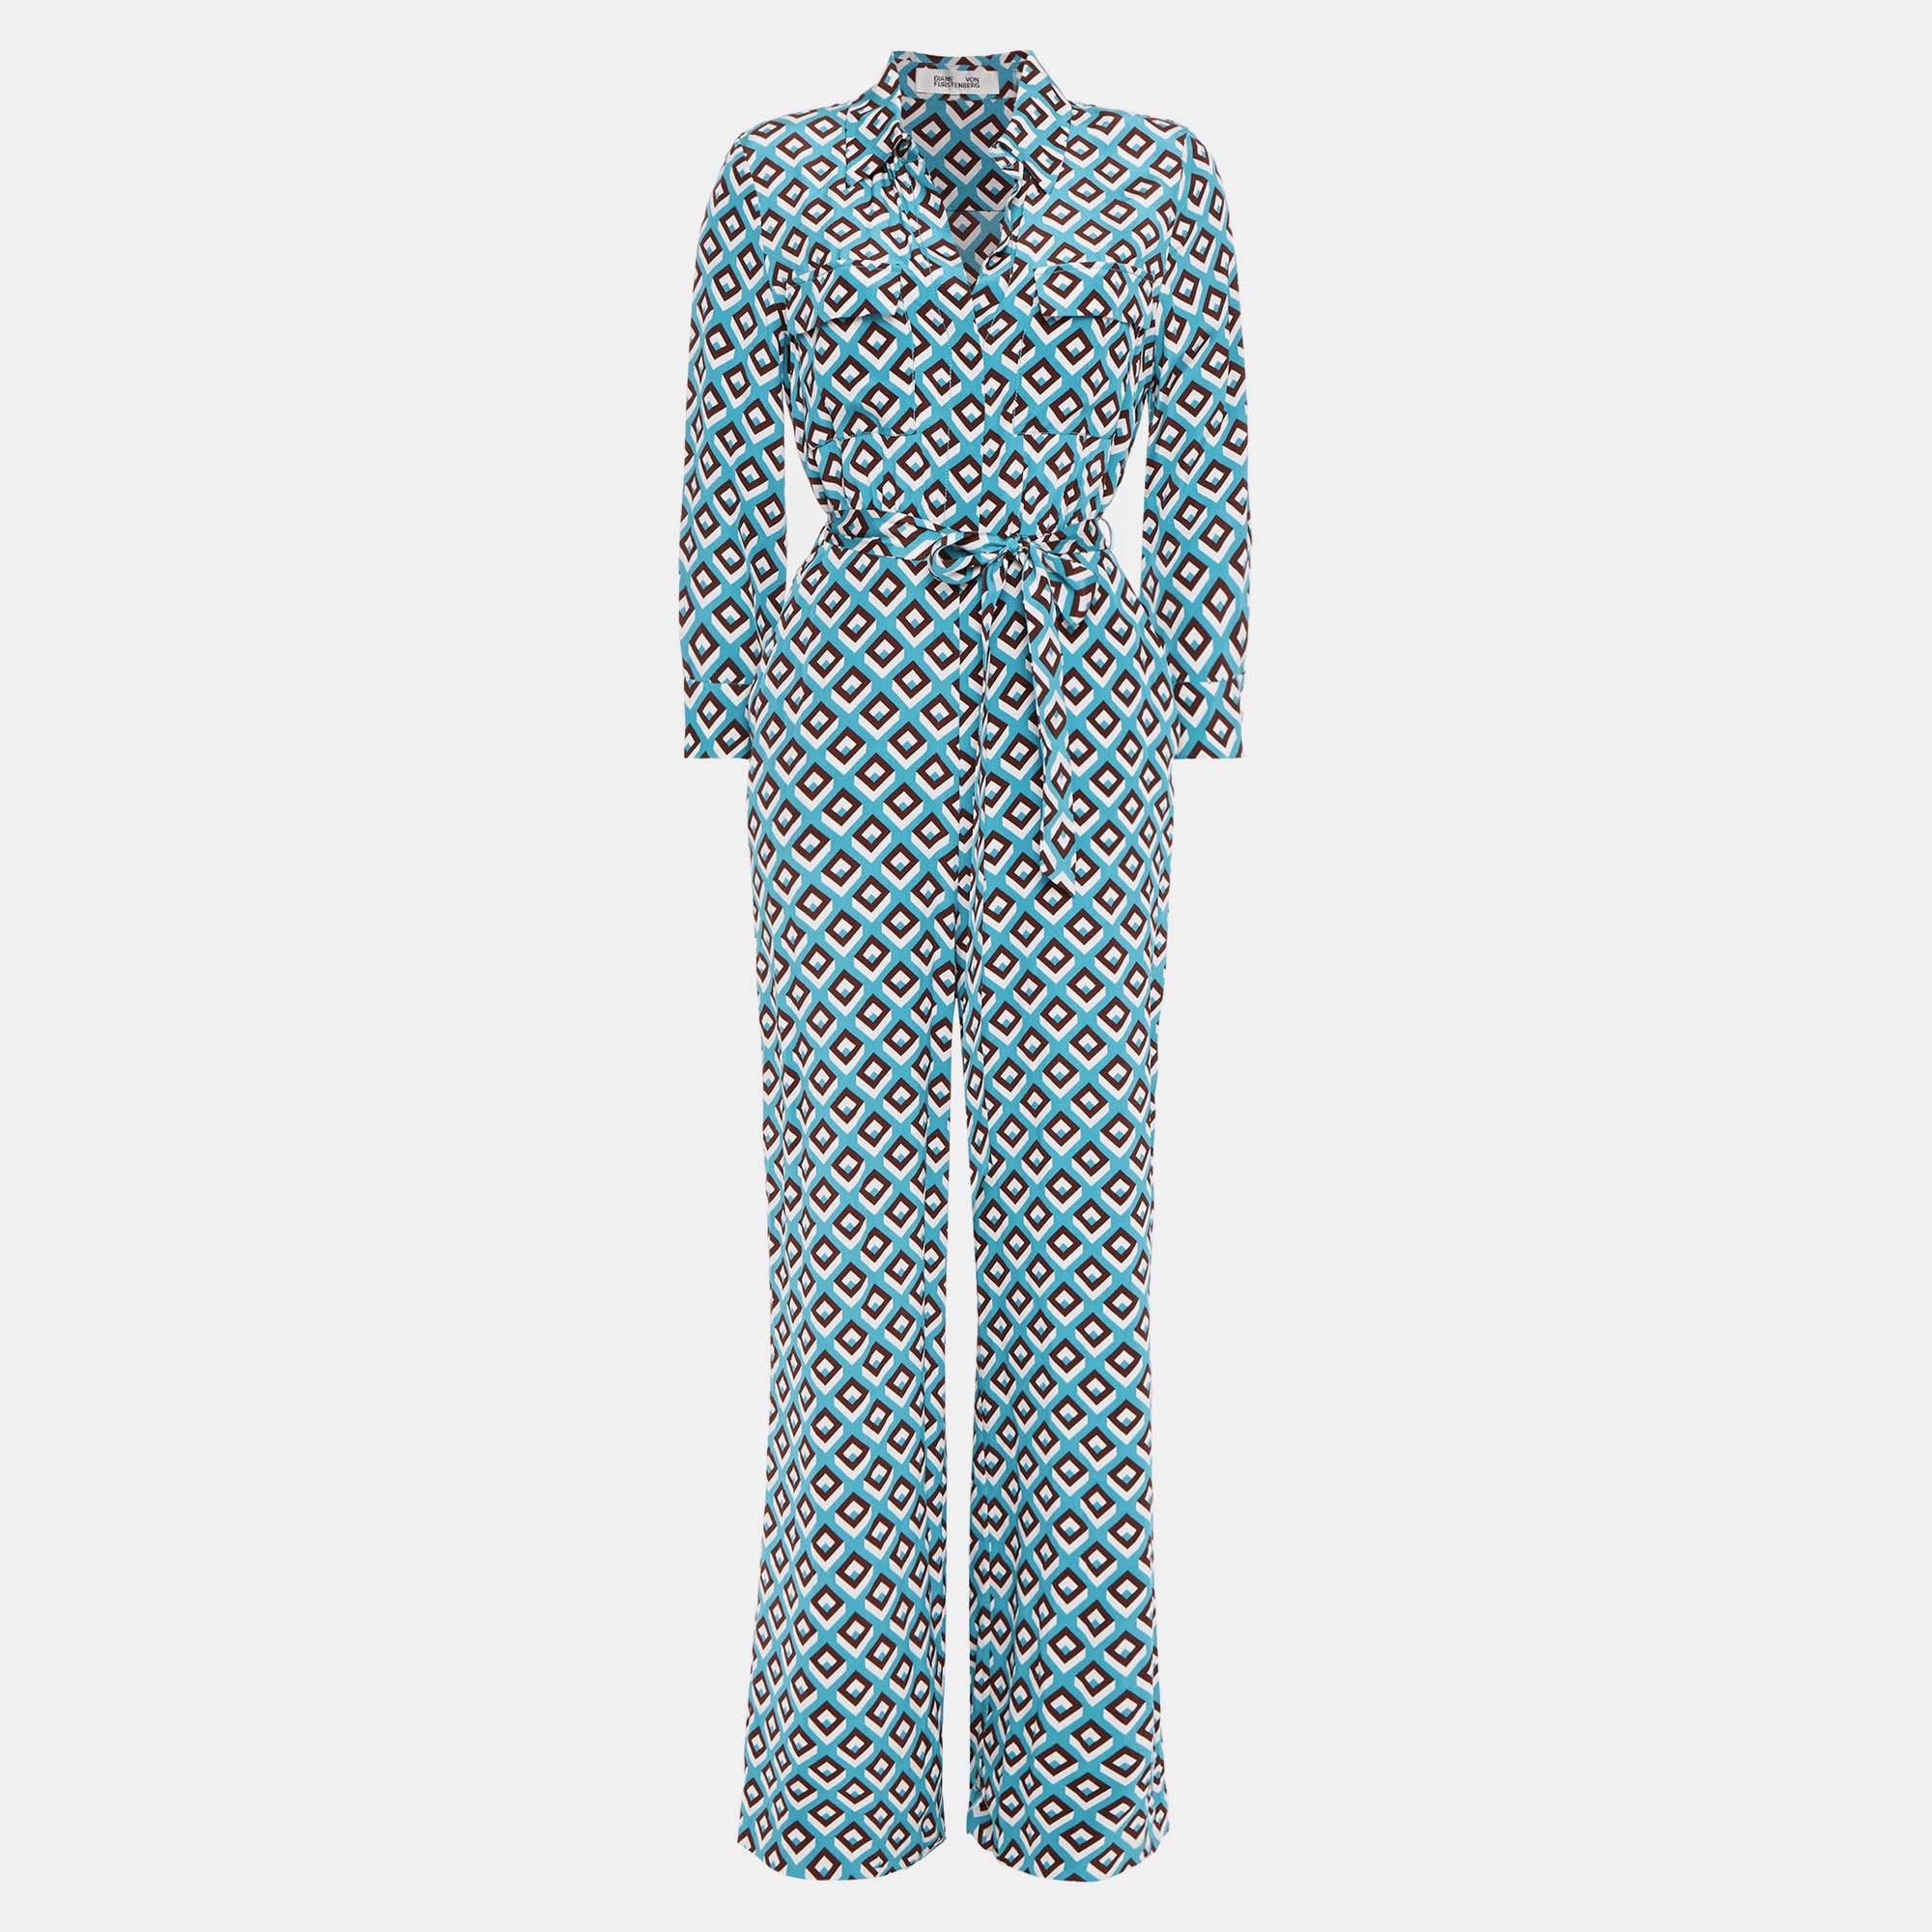 Diane von furstenberg blue printed silk jumpsuit m (us 6)